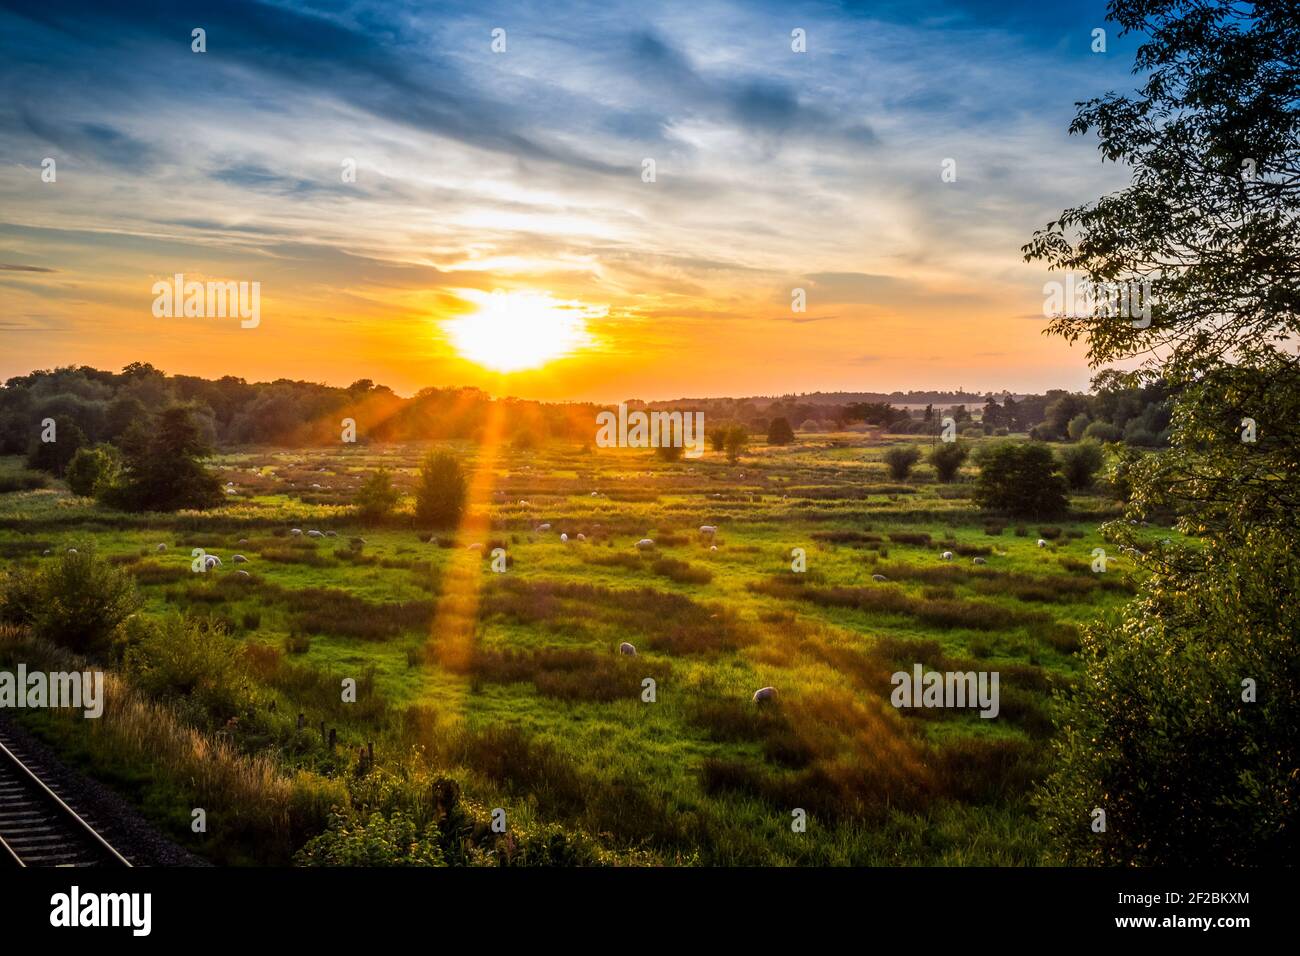 Il sole tramonta sul pascolo delle pecore in un campo vicino a Kintbury, Berkshire, Regno Unito, lasciando un bel bagliore arancione nel cielo. Foto Stock